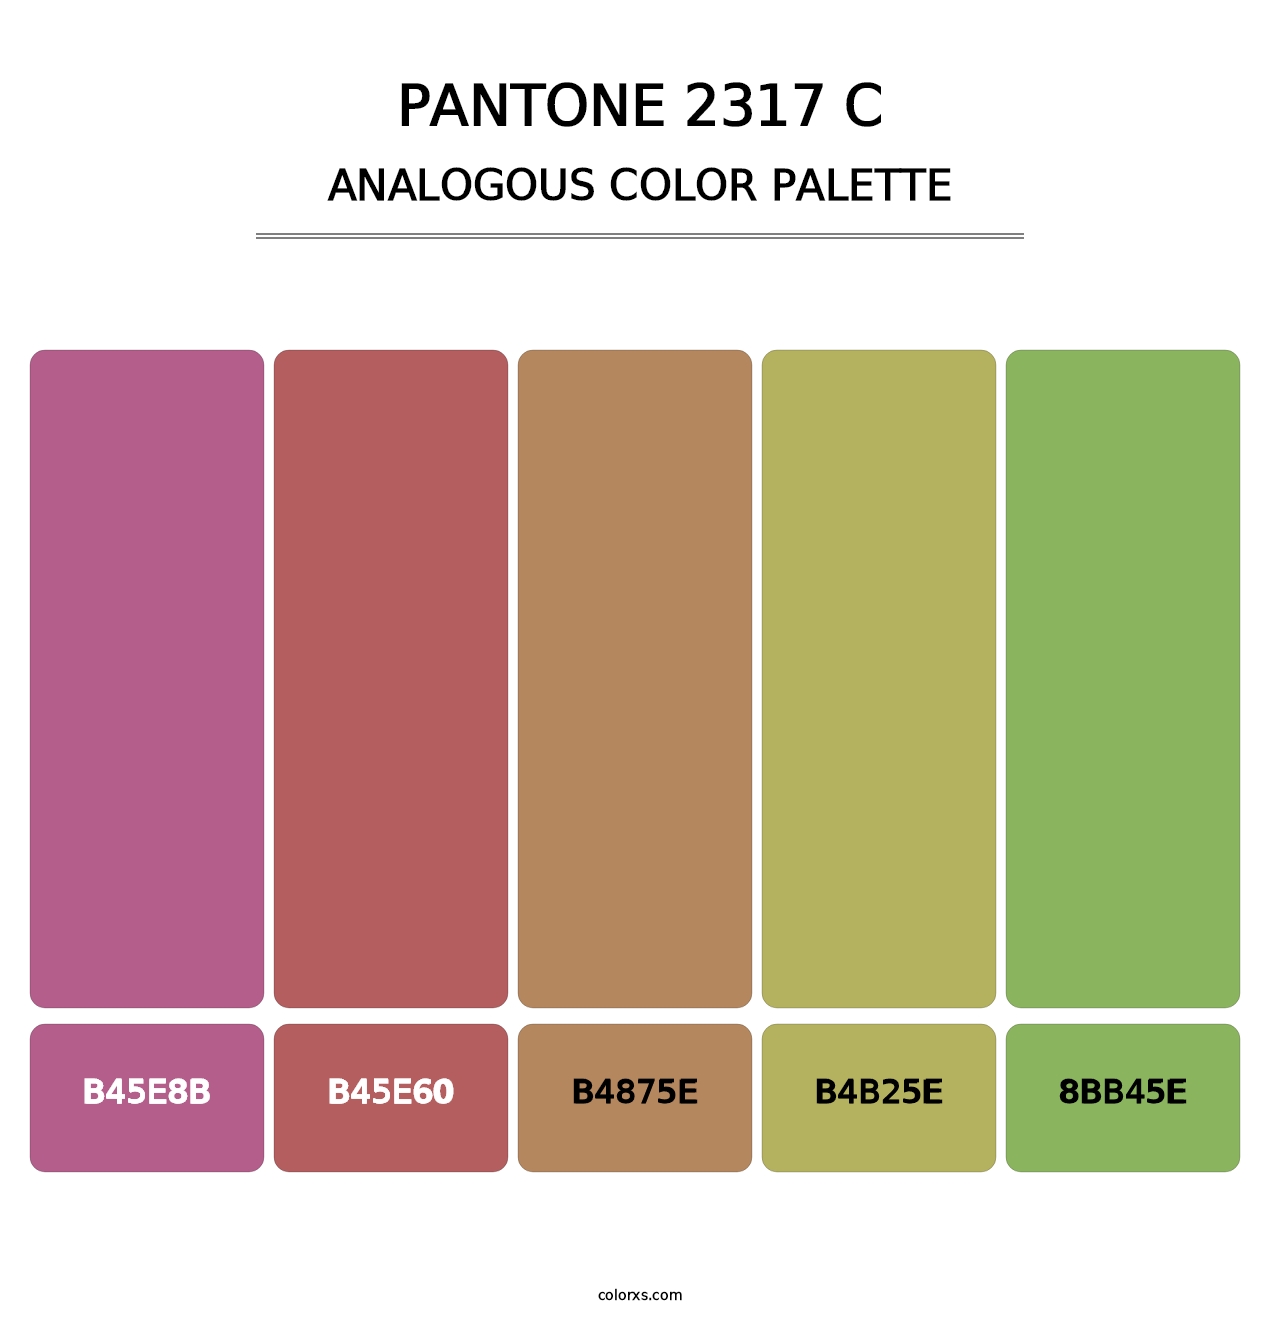 PANTONE 2317 C - Analogous Color Palette